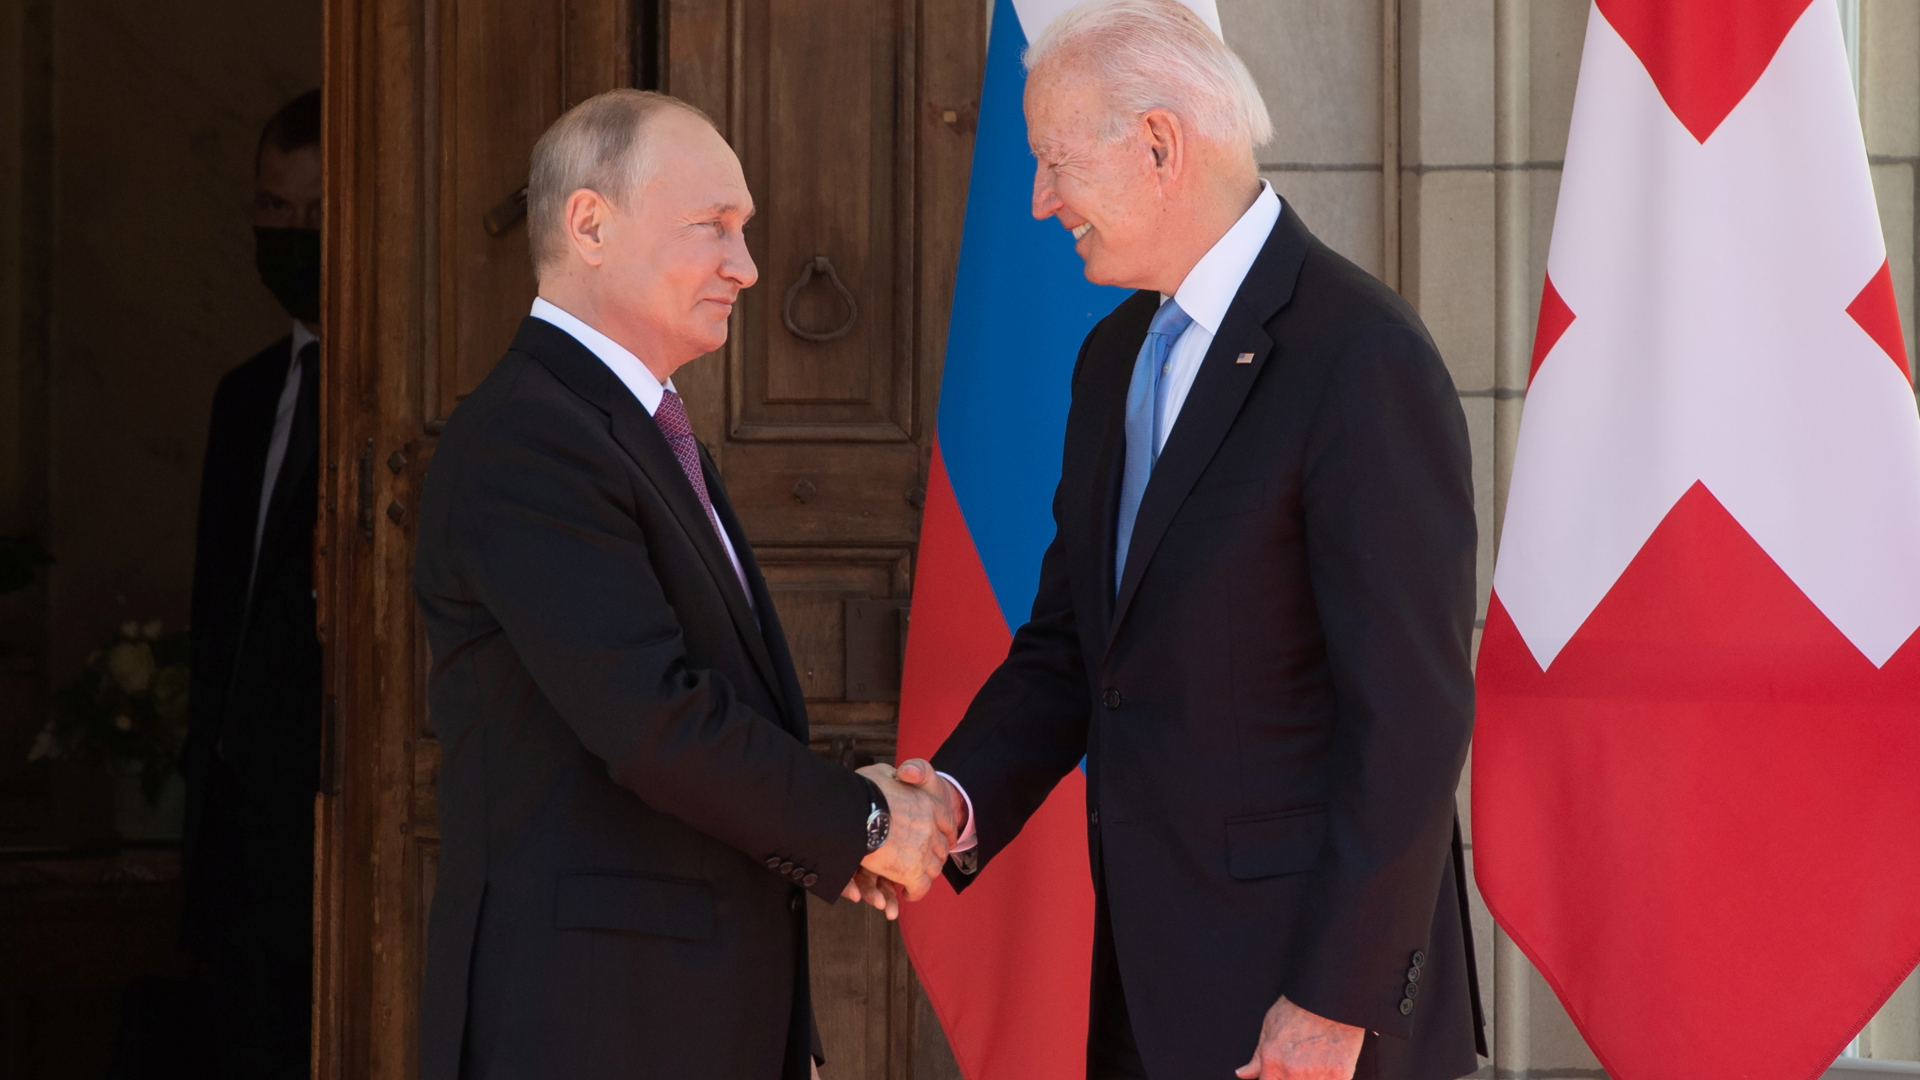 Wladimir Putin und Joe Biden (rechts) begrüßen sich bei ihrem Treffen in Genf im Juni 2021 per Handschlag.